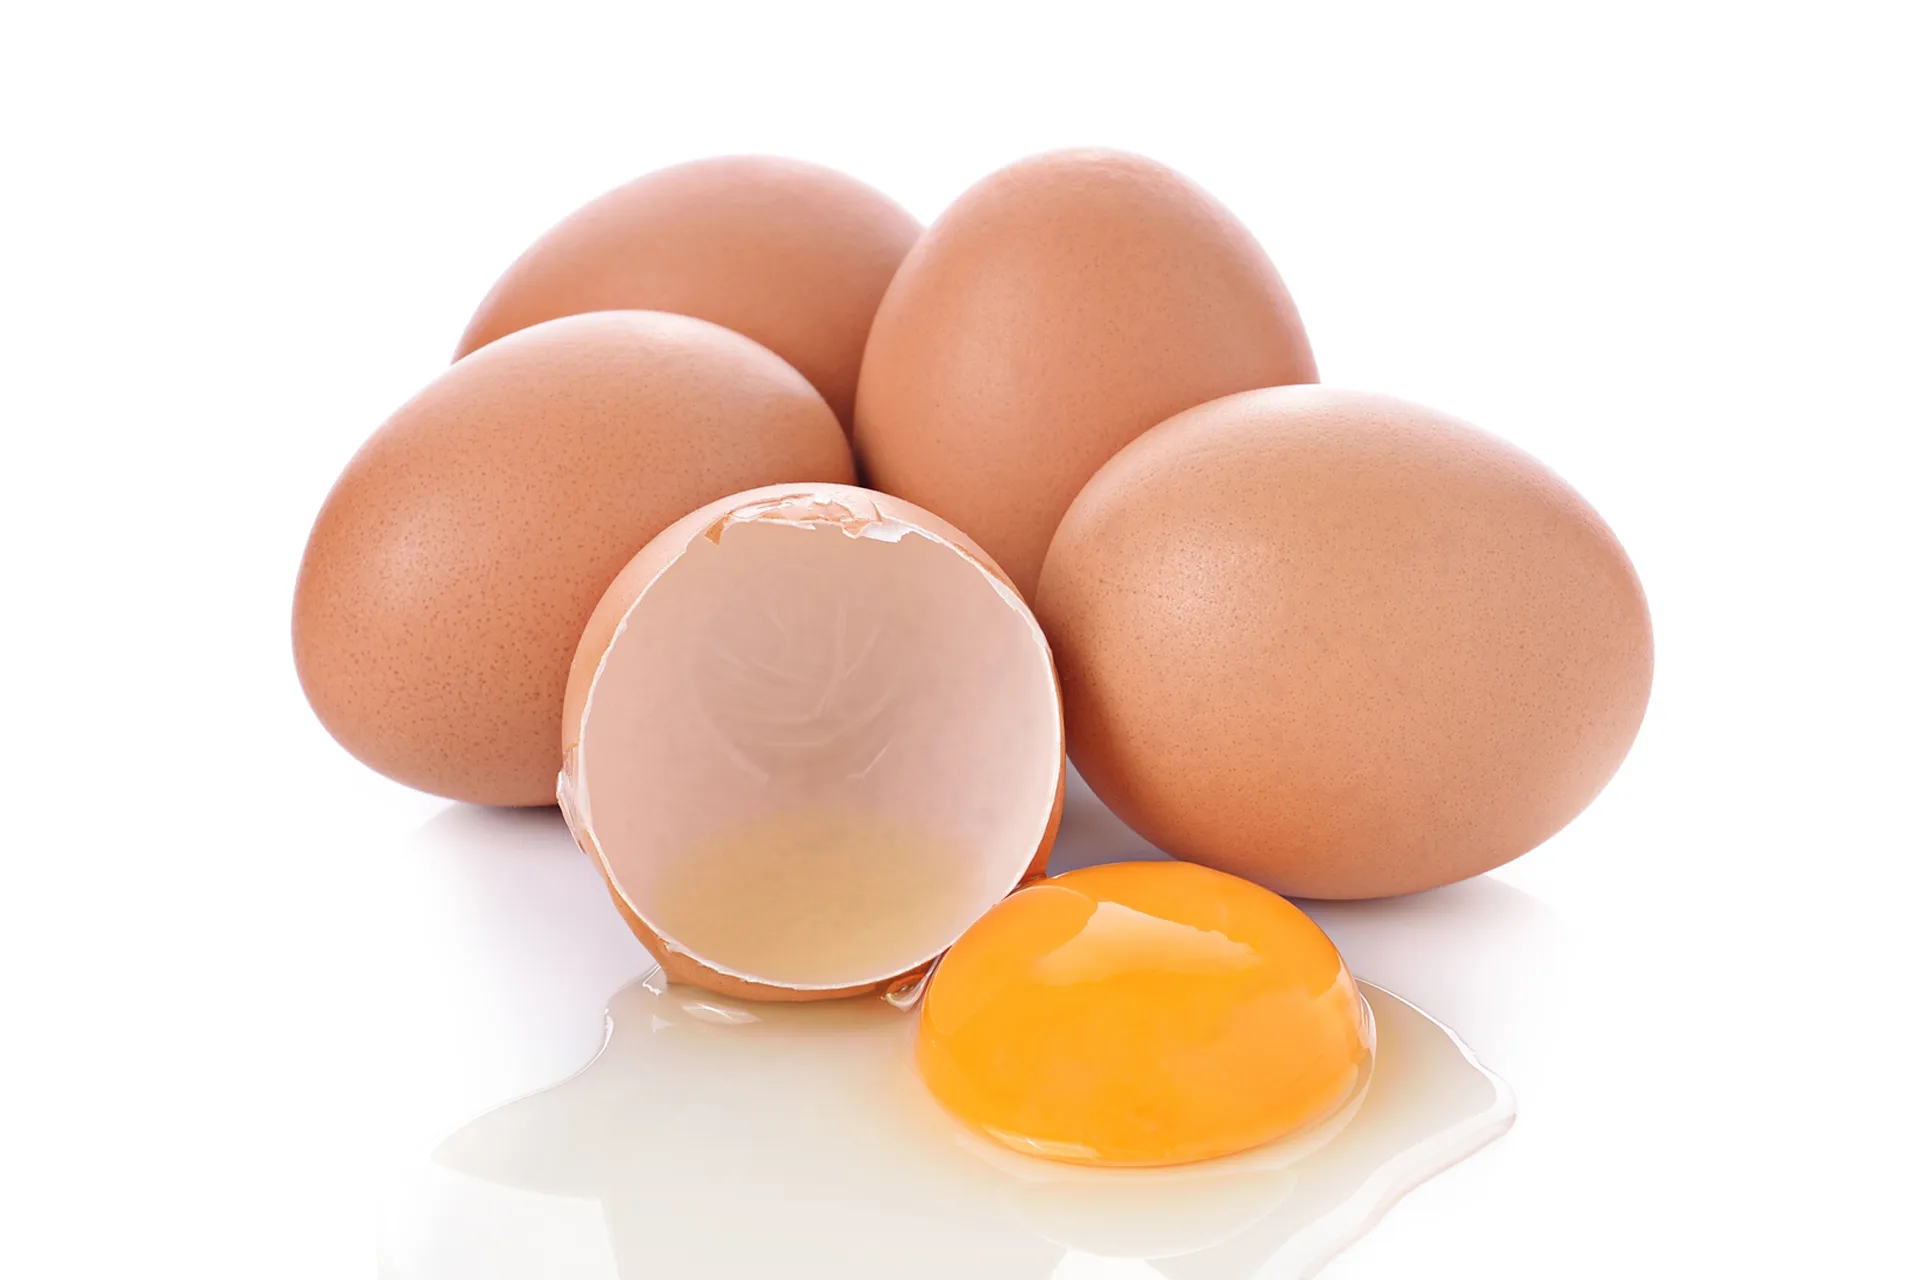 5 ประโยชน์ดีๆ ของ “ไข่ไก่” ต่อสุขภาพ